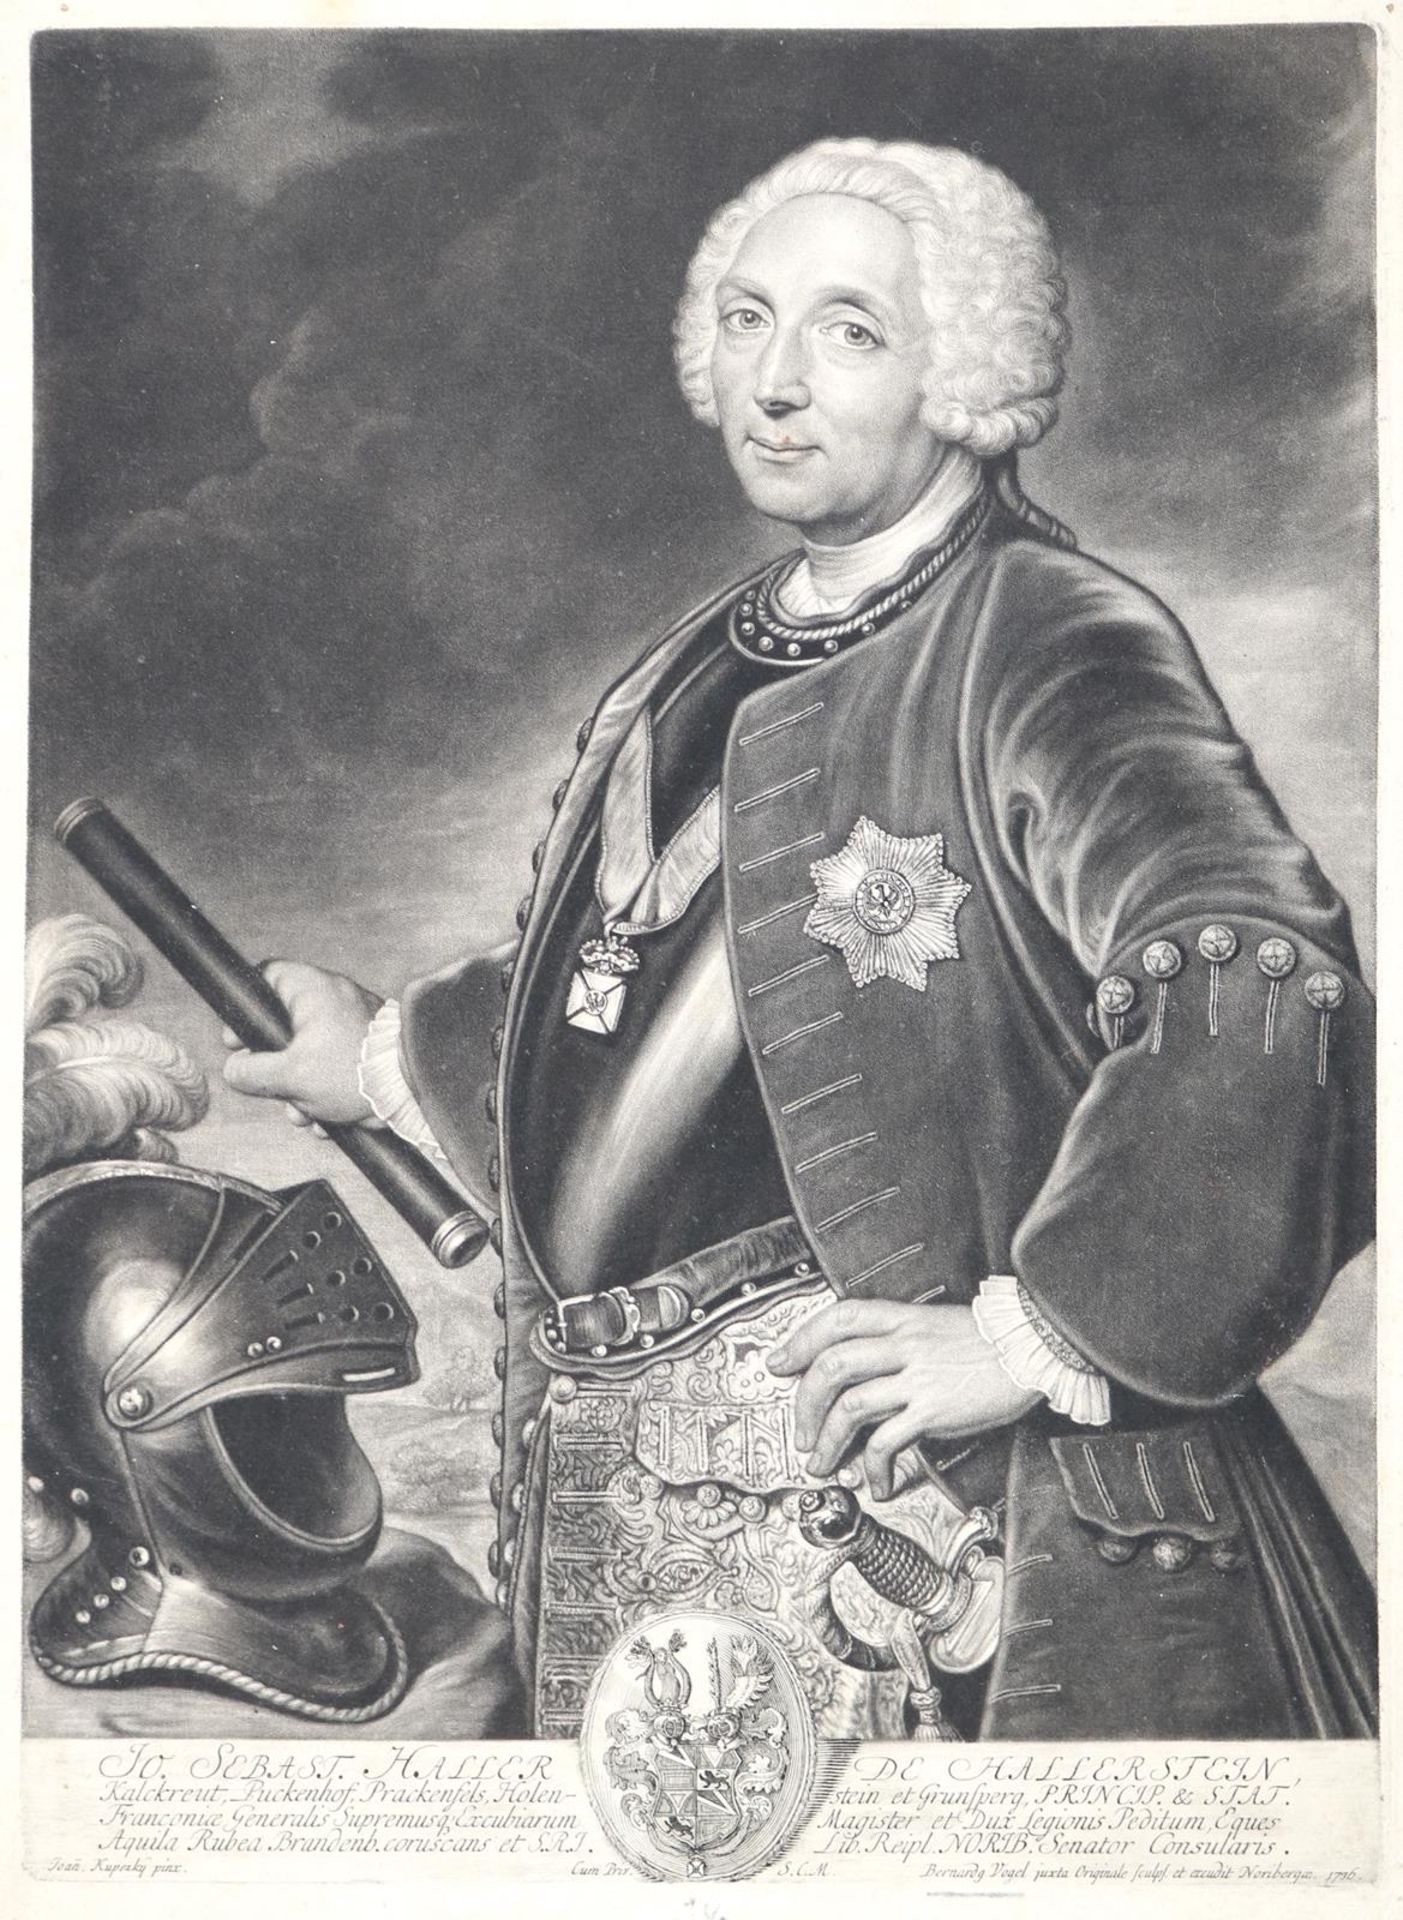 Haller von Hallerstein, Georg Burkhard.